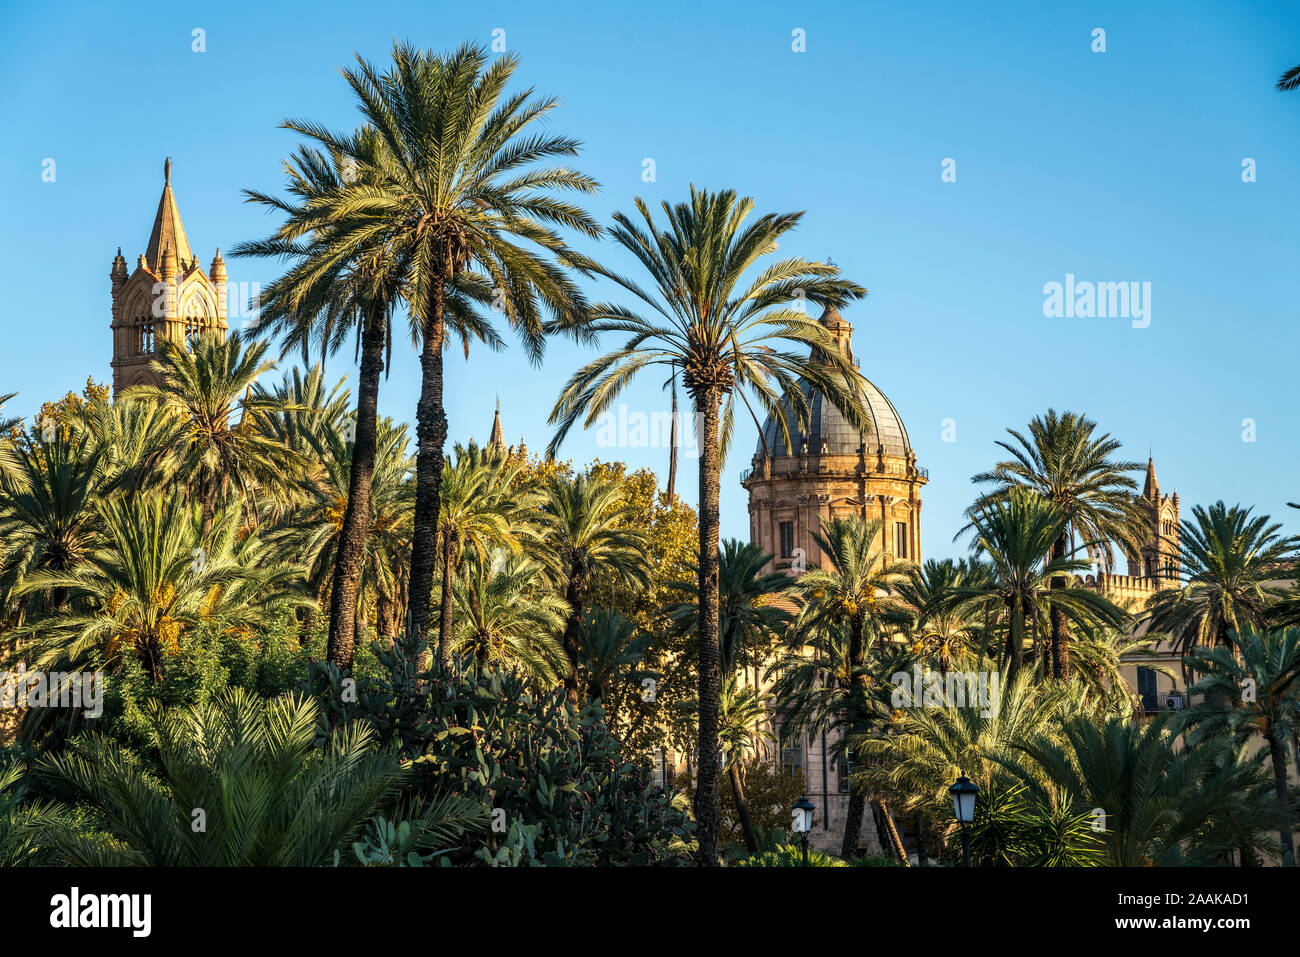 Palmen im Park der Villa und die Türme der Kathedrale Maria Santissima Assunta, Palermo, Sizilien, Italien, Europa | Park Villapalm Bäume und die cathe Stockfoto